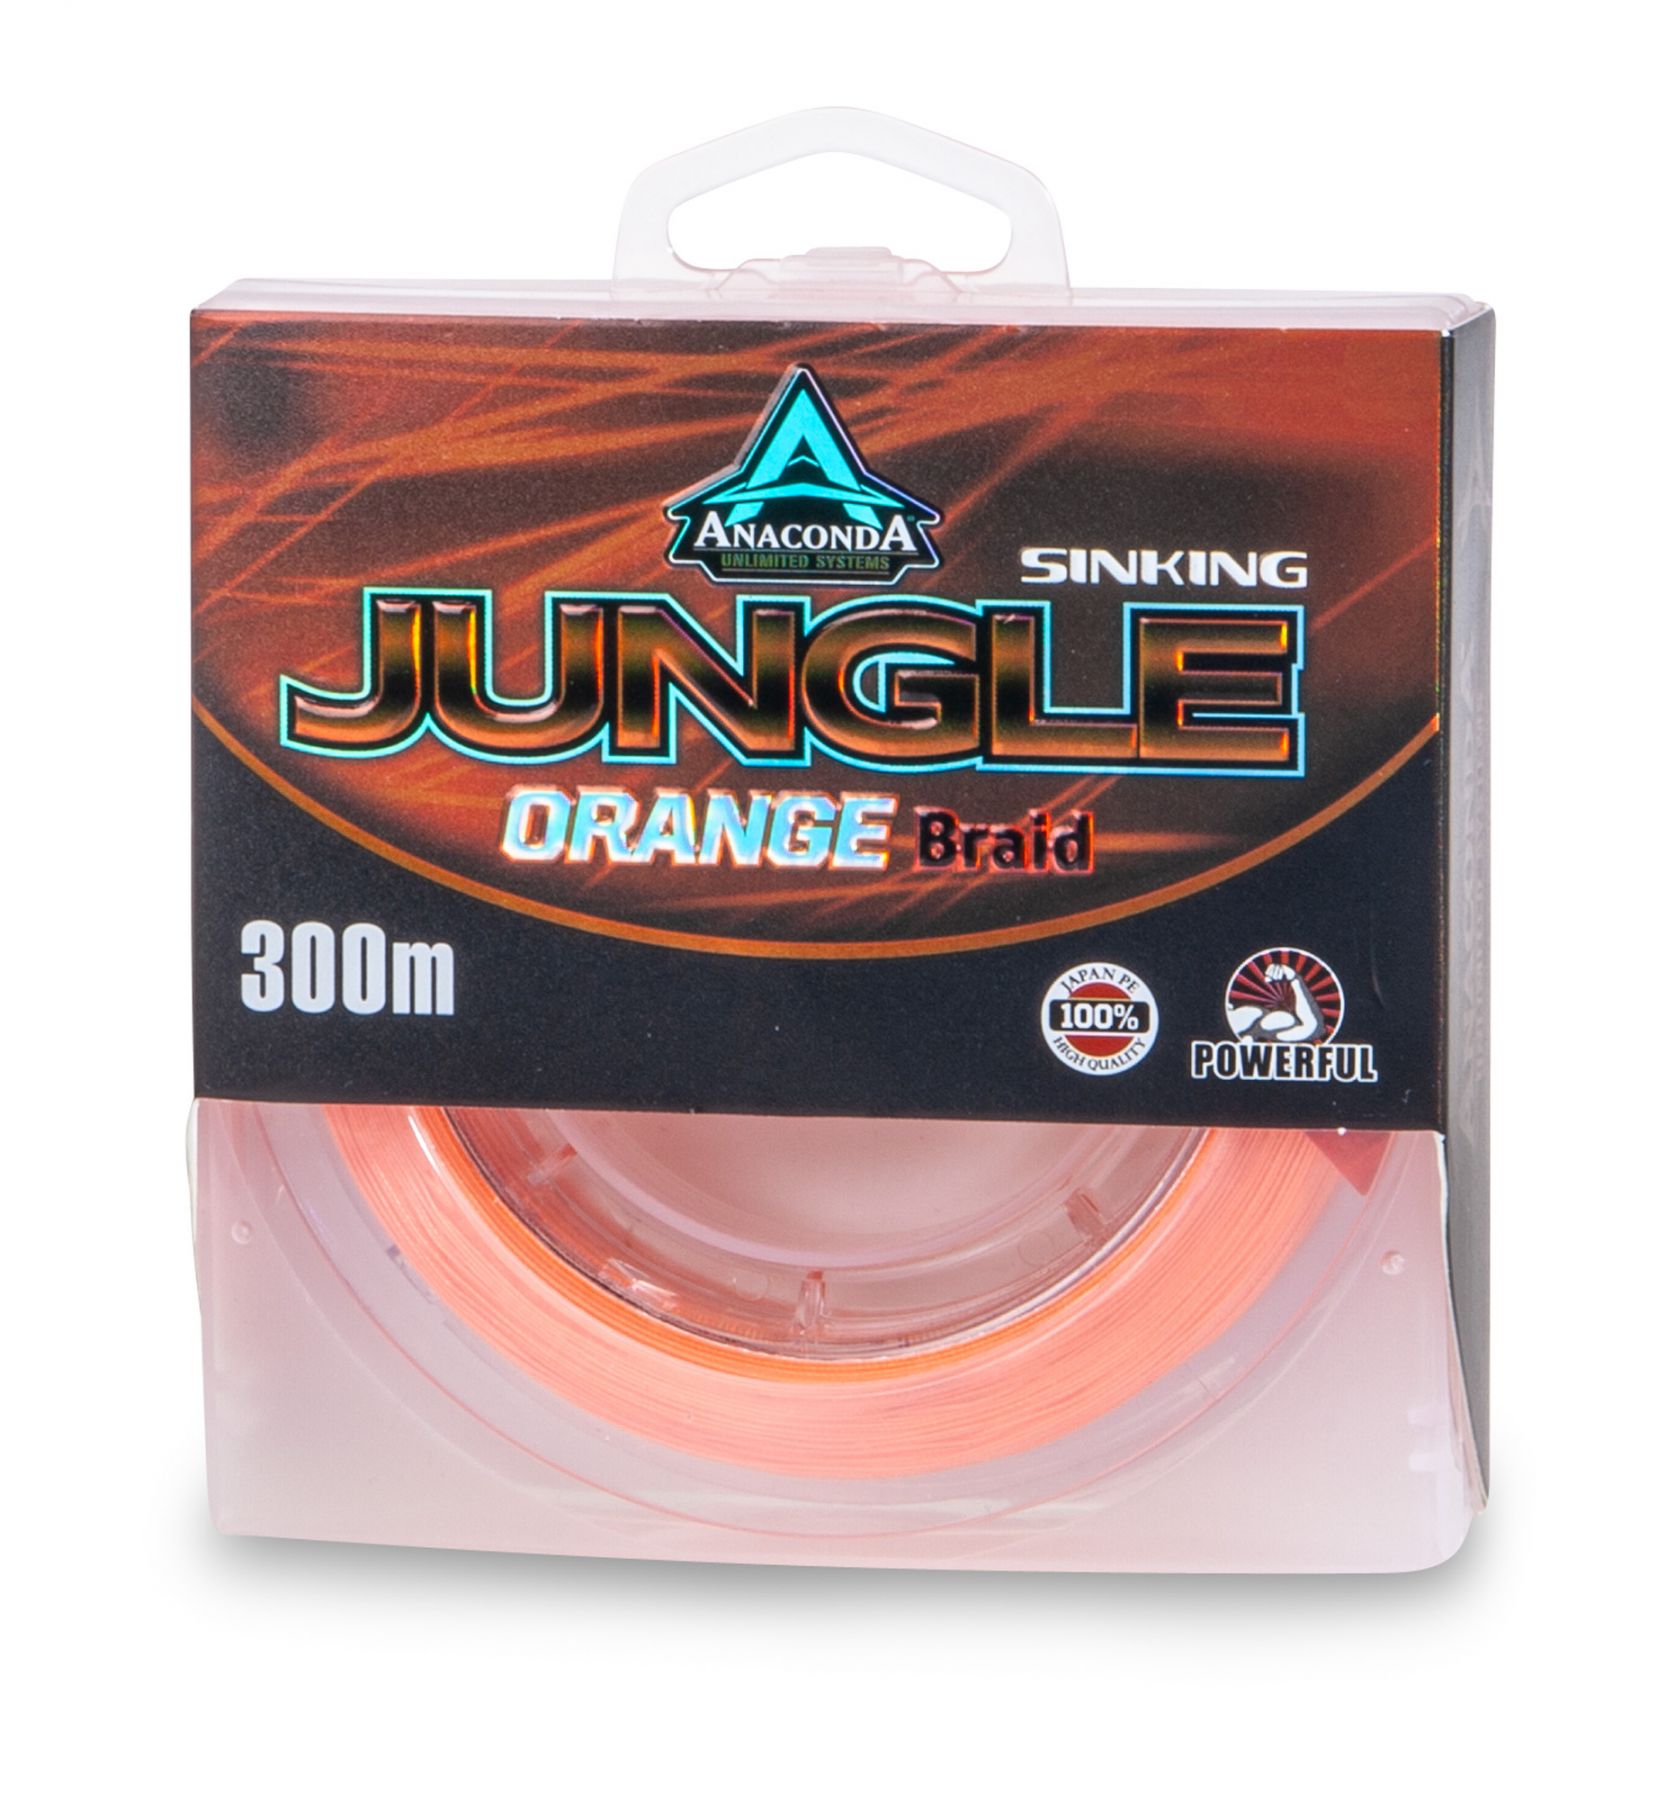 Anaconda Jungle Orange Lenza Intrecciata Affondante (300m)